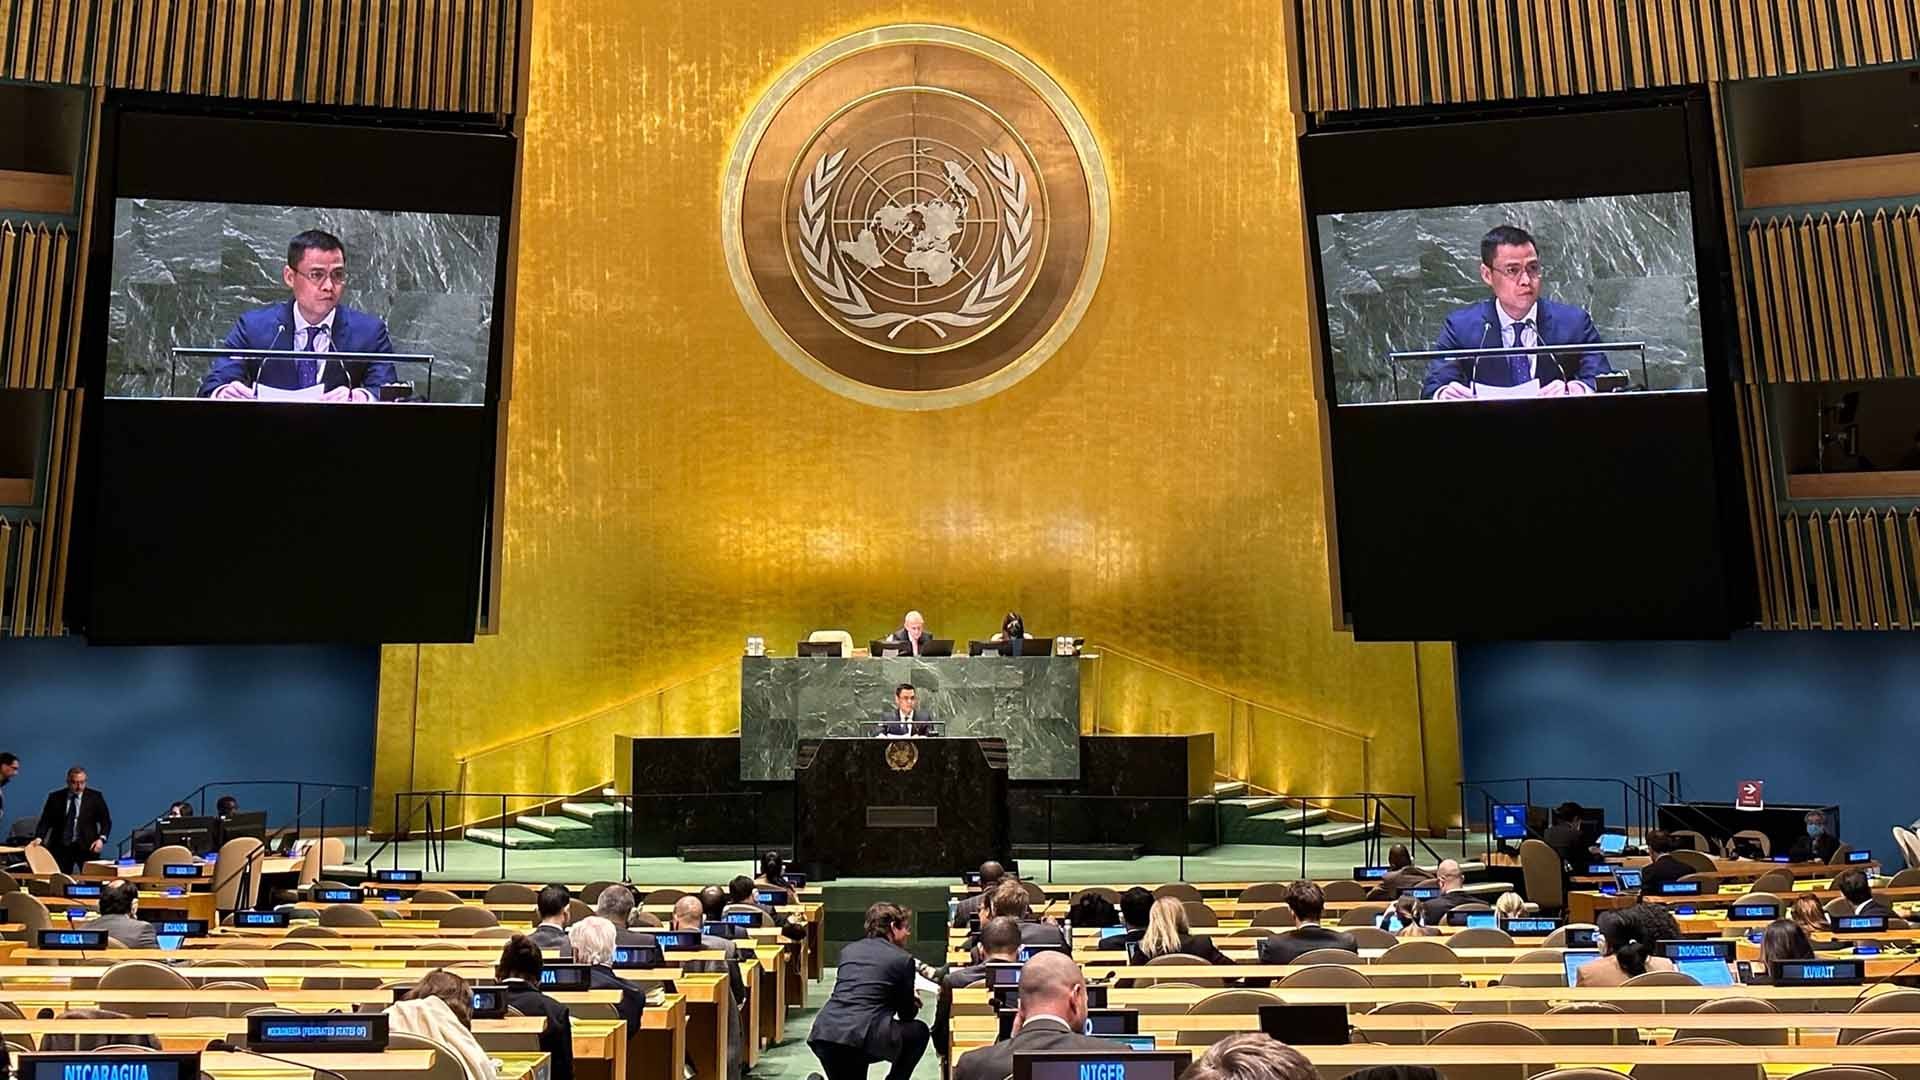 Phiên họp khẩn cấp lần thứ 11 của Đại hội đồng Liên hợp quốc để tiếp tục thảo luận về tình hình Ukraine, đúng một năm kể từ khi bắt đầu xung đột.